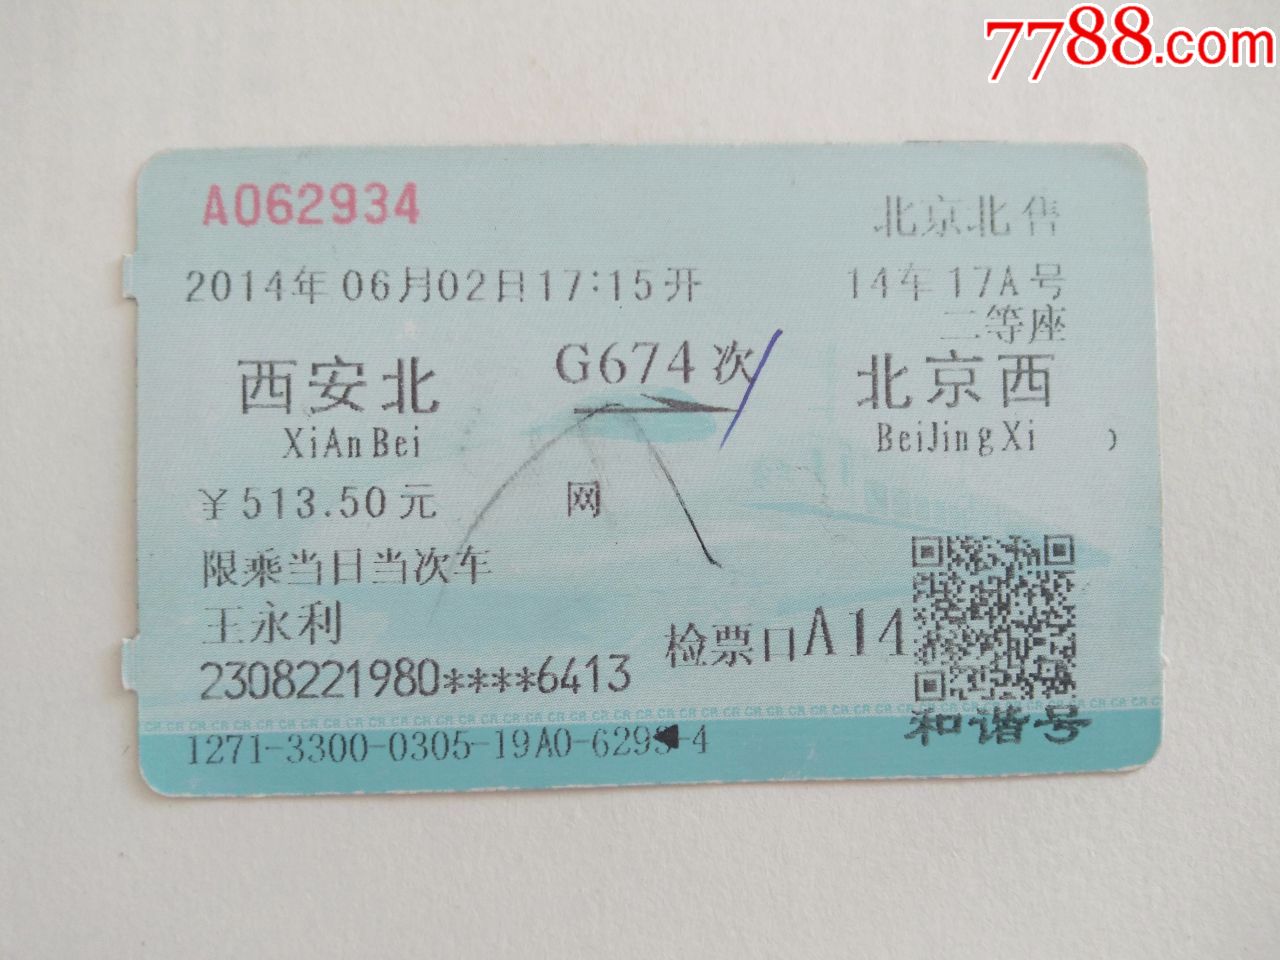 西安北-G674次-北京西